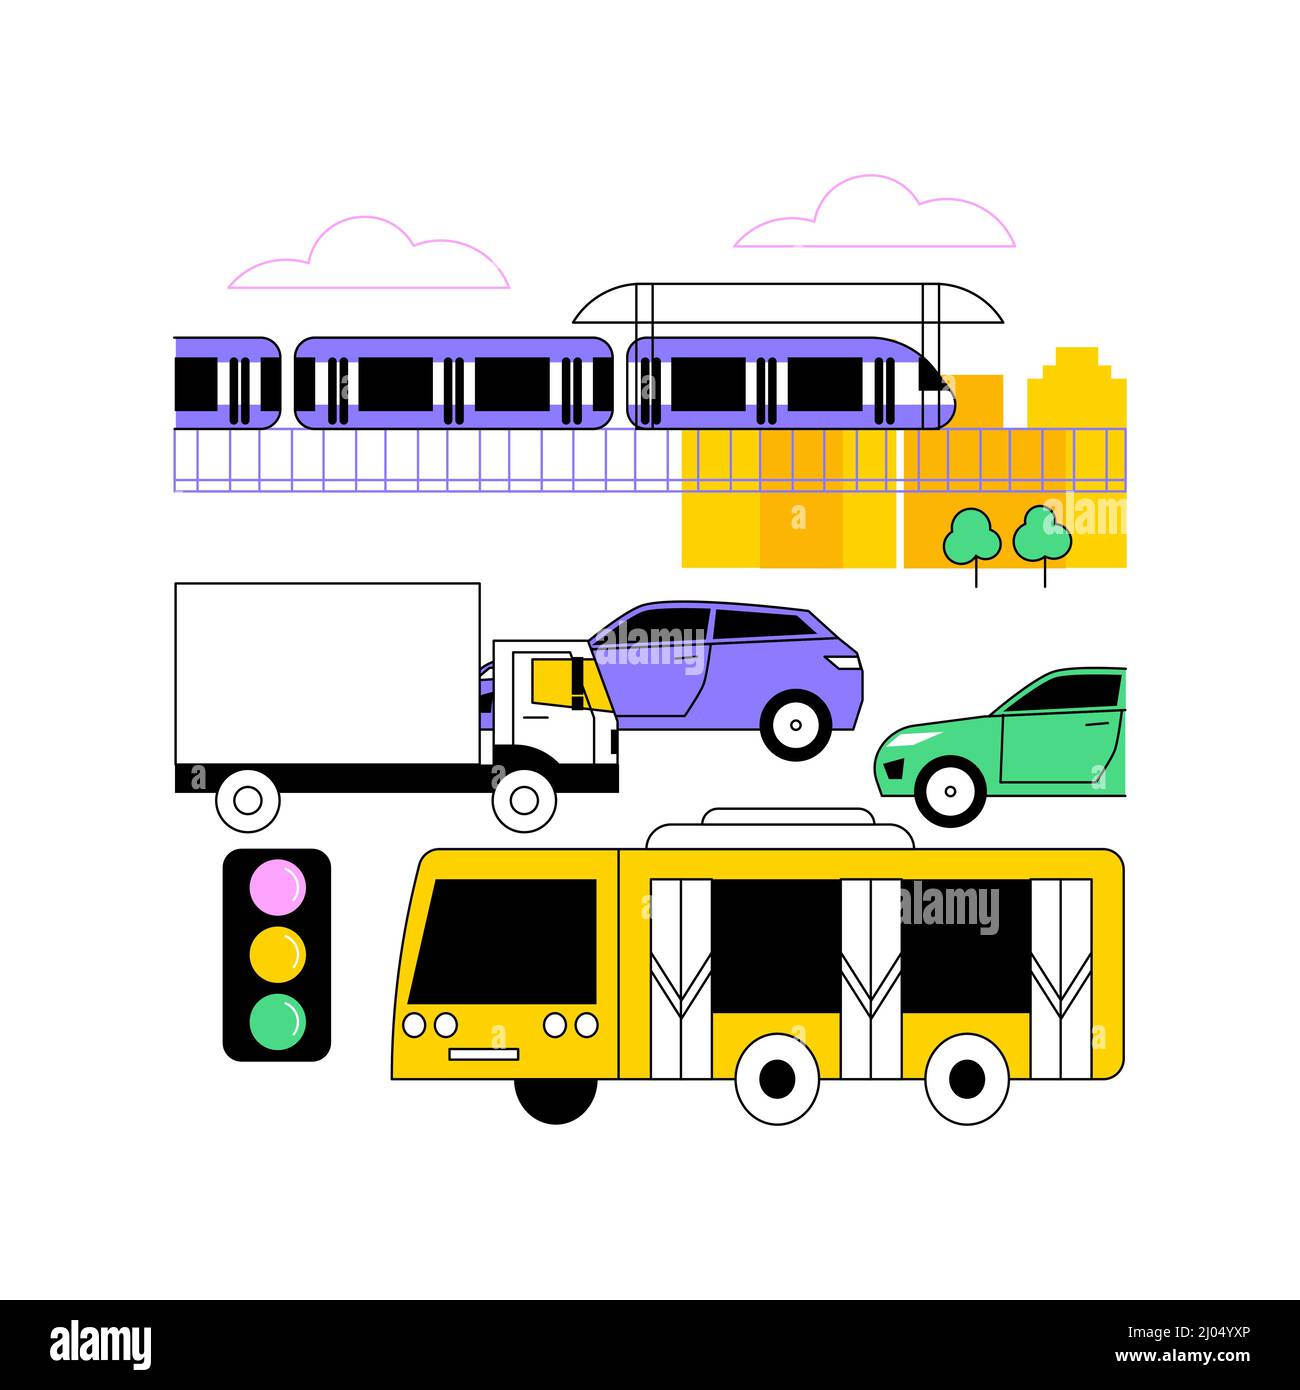 Ilustración vectorial de concepto abstracto de transporte urbano. Sistema de transporte público, carreteras urbanas concurridas, tráfico de coches, plataforma de la estación de metro, parada de autobús, personas en espera, metáfora abstracta del metro. Ilustración del Vector